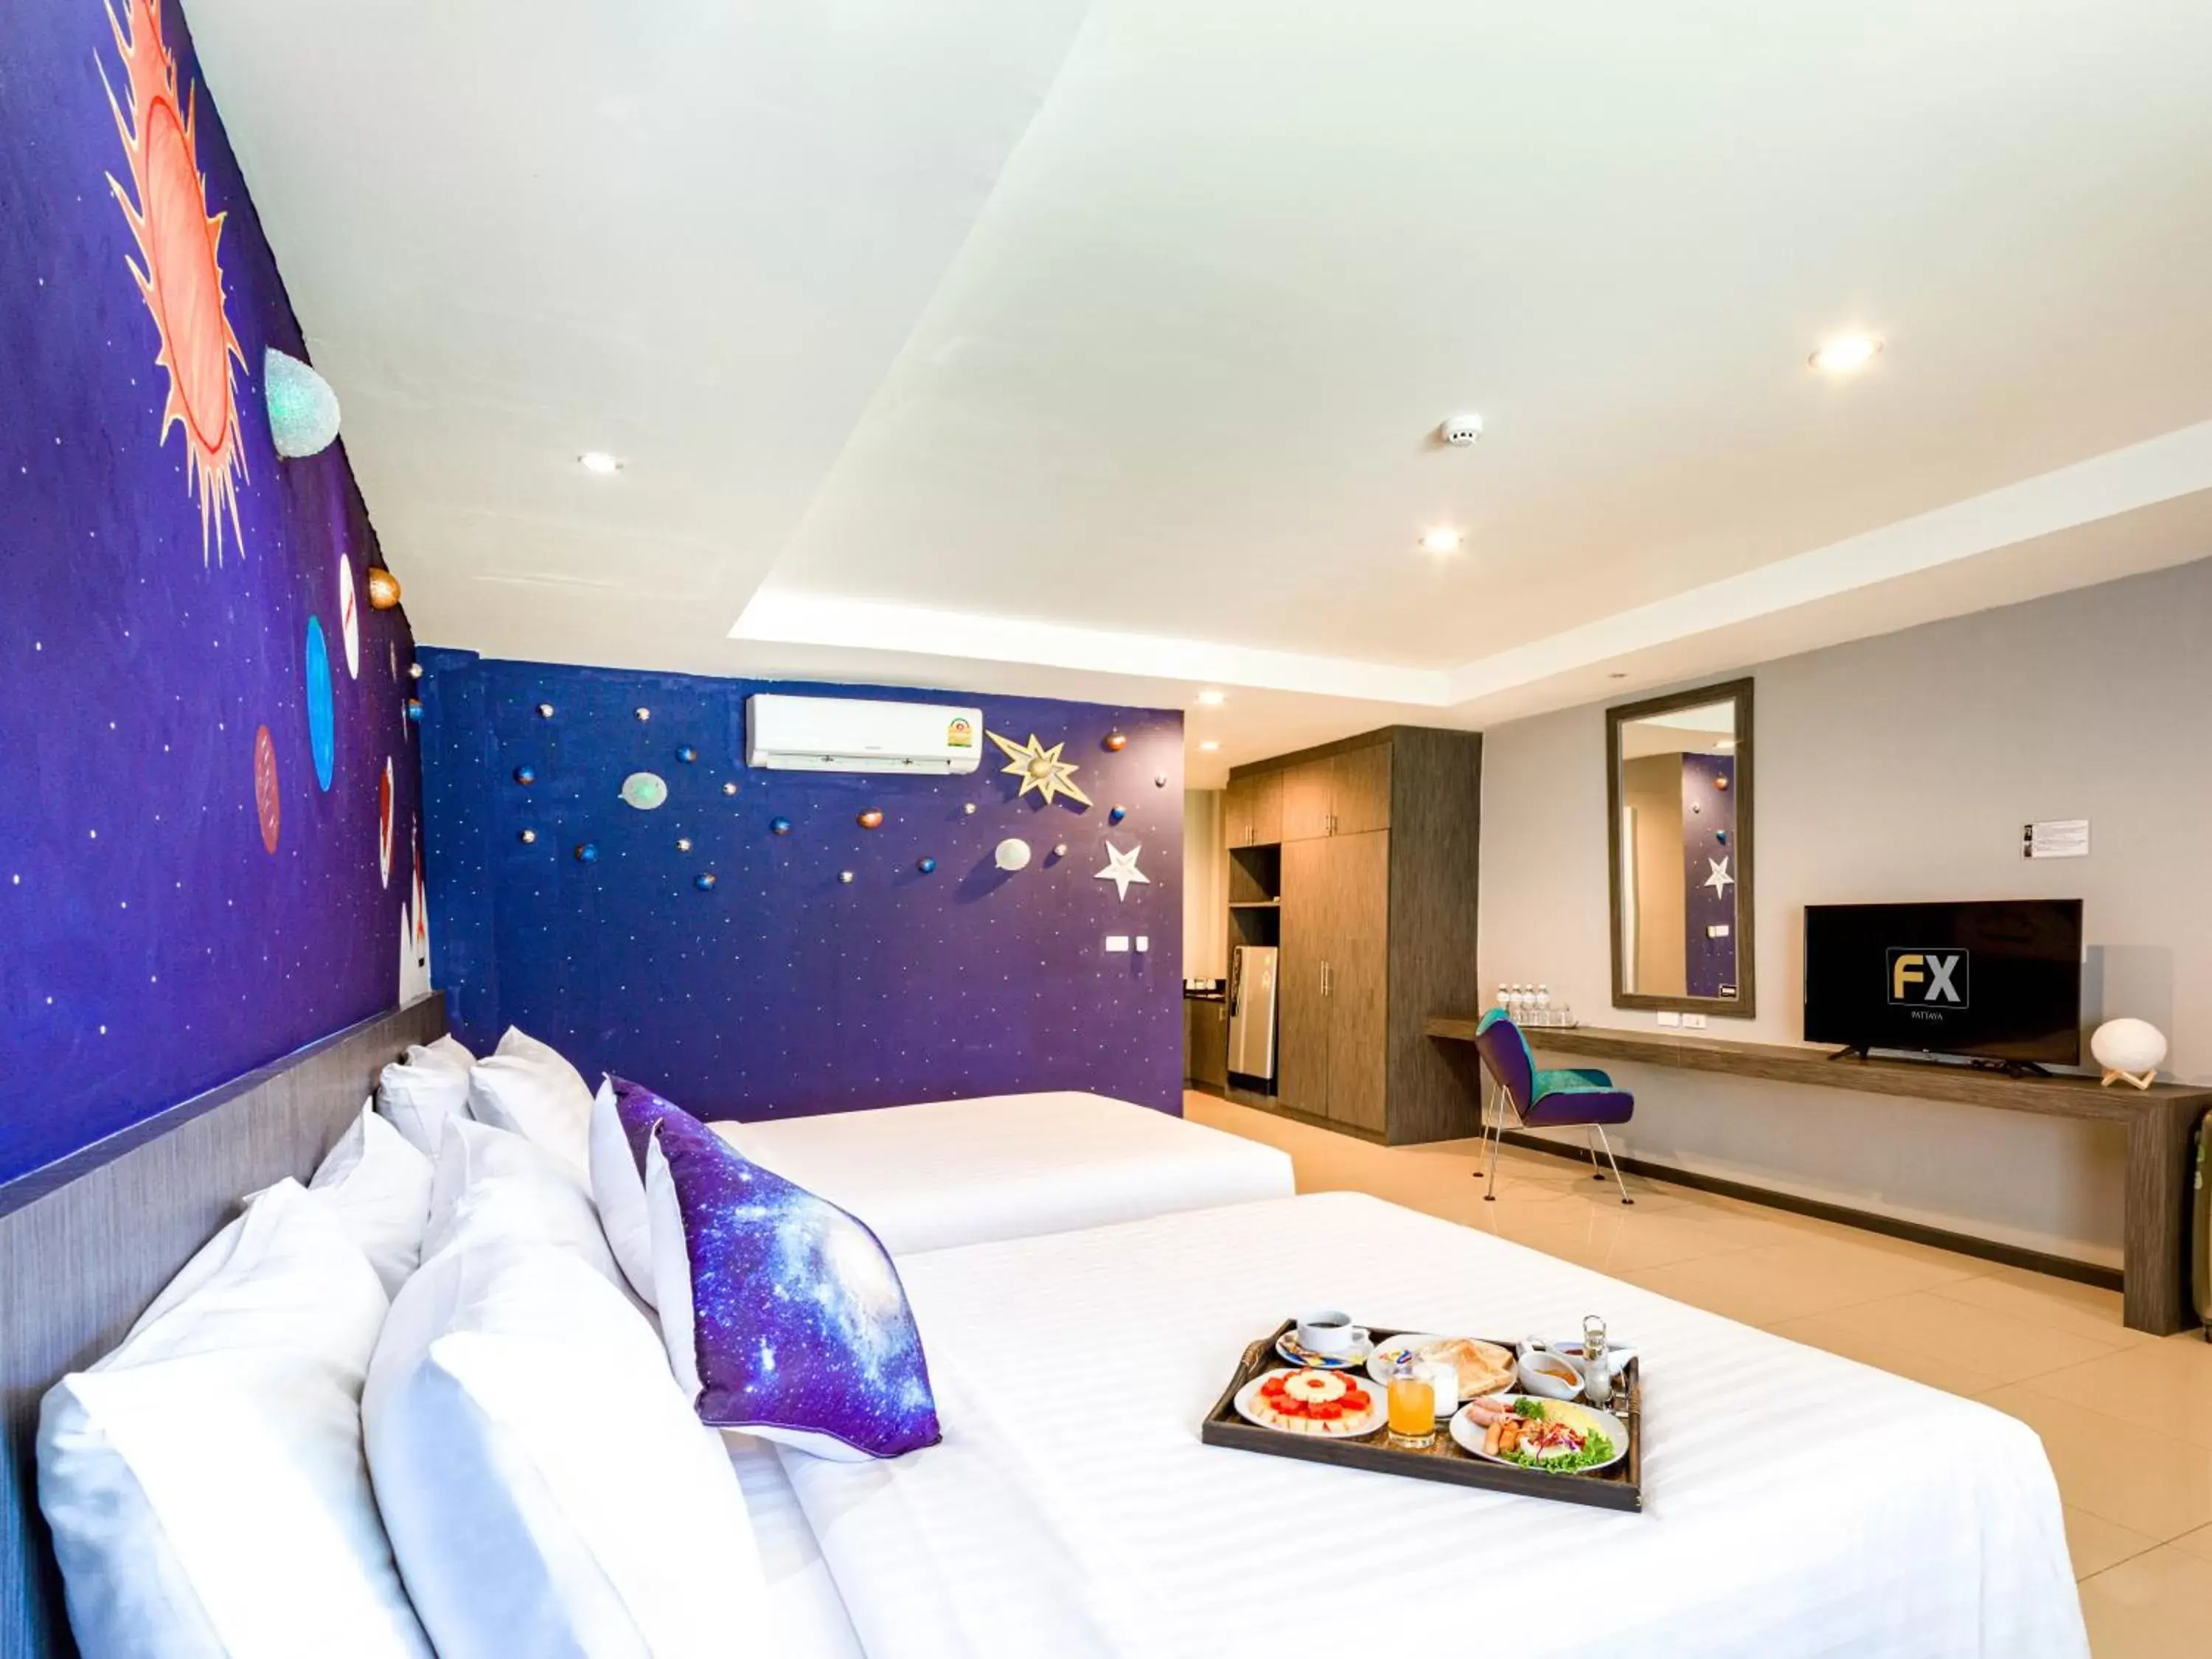 Bedroom in FX Hotel Pattaya